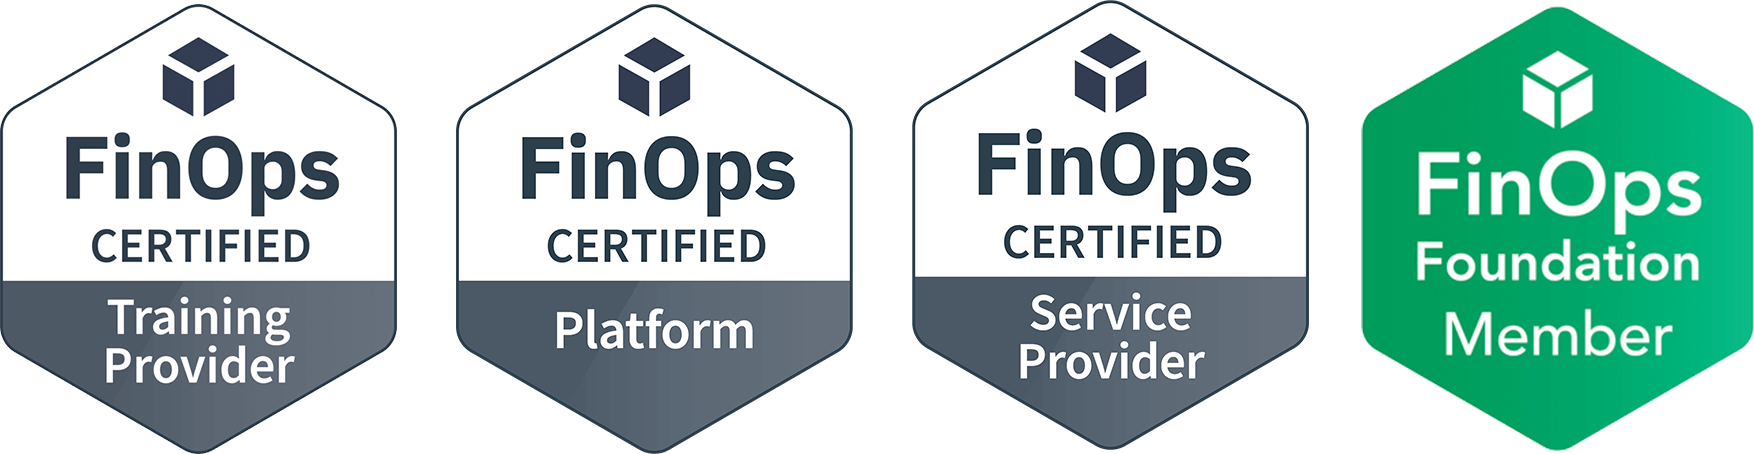 FinOps Certified Service Provide